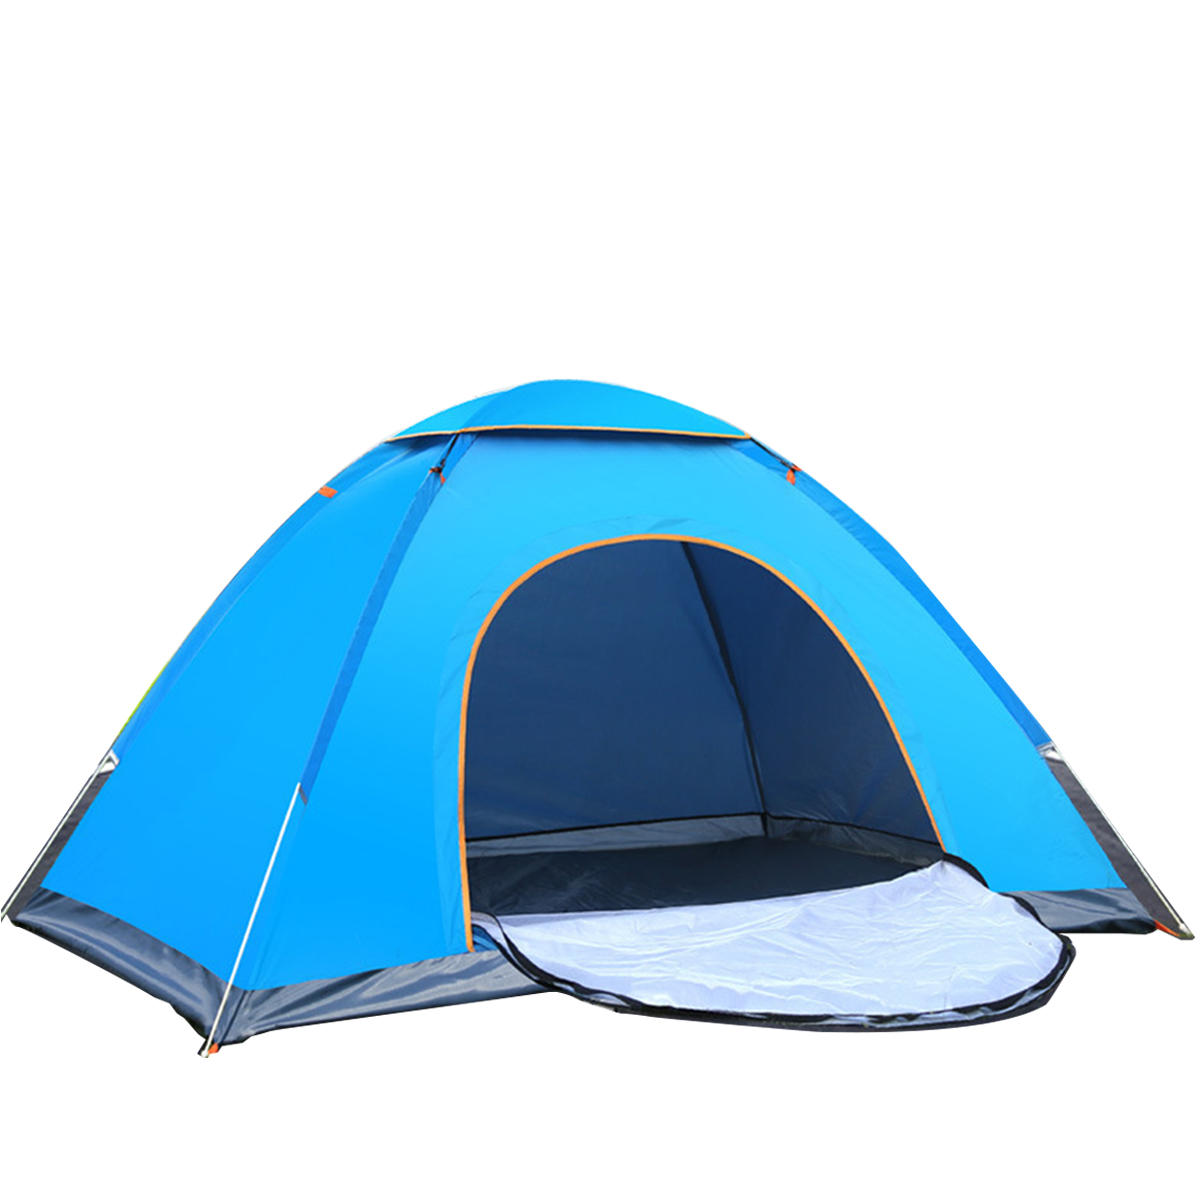 IPRee® 2-3 человека складной автоматический палаточный лагерь на открытом воздухе, защищенный от солнца и воды, для рыбалки, походов и путешествий.